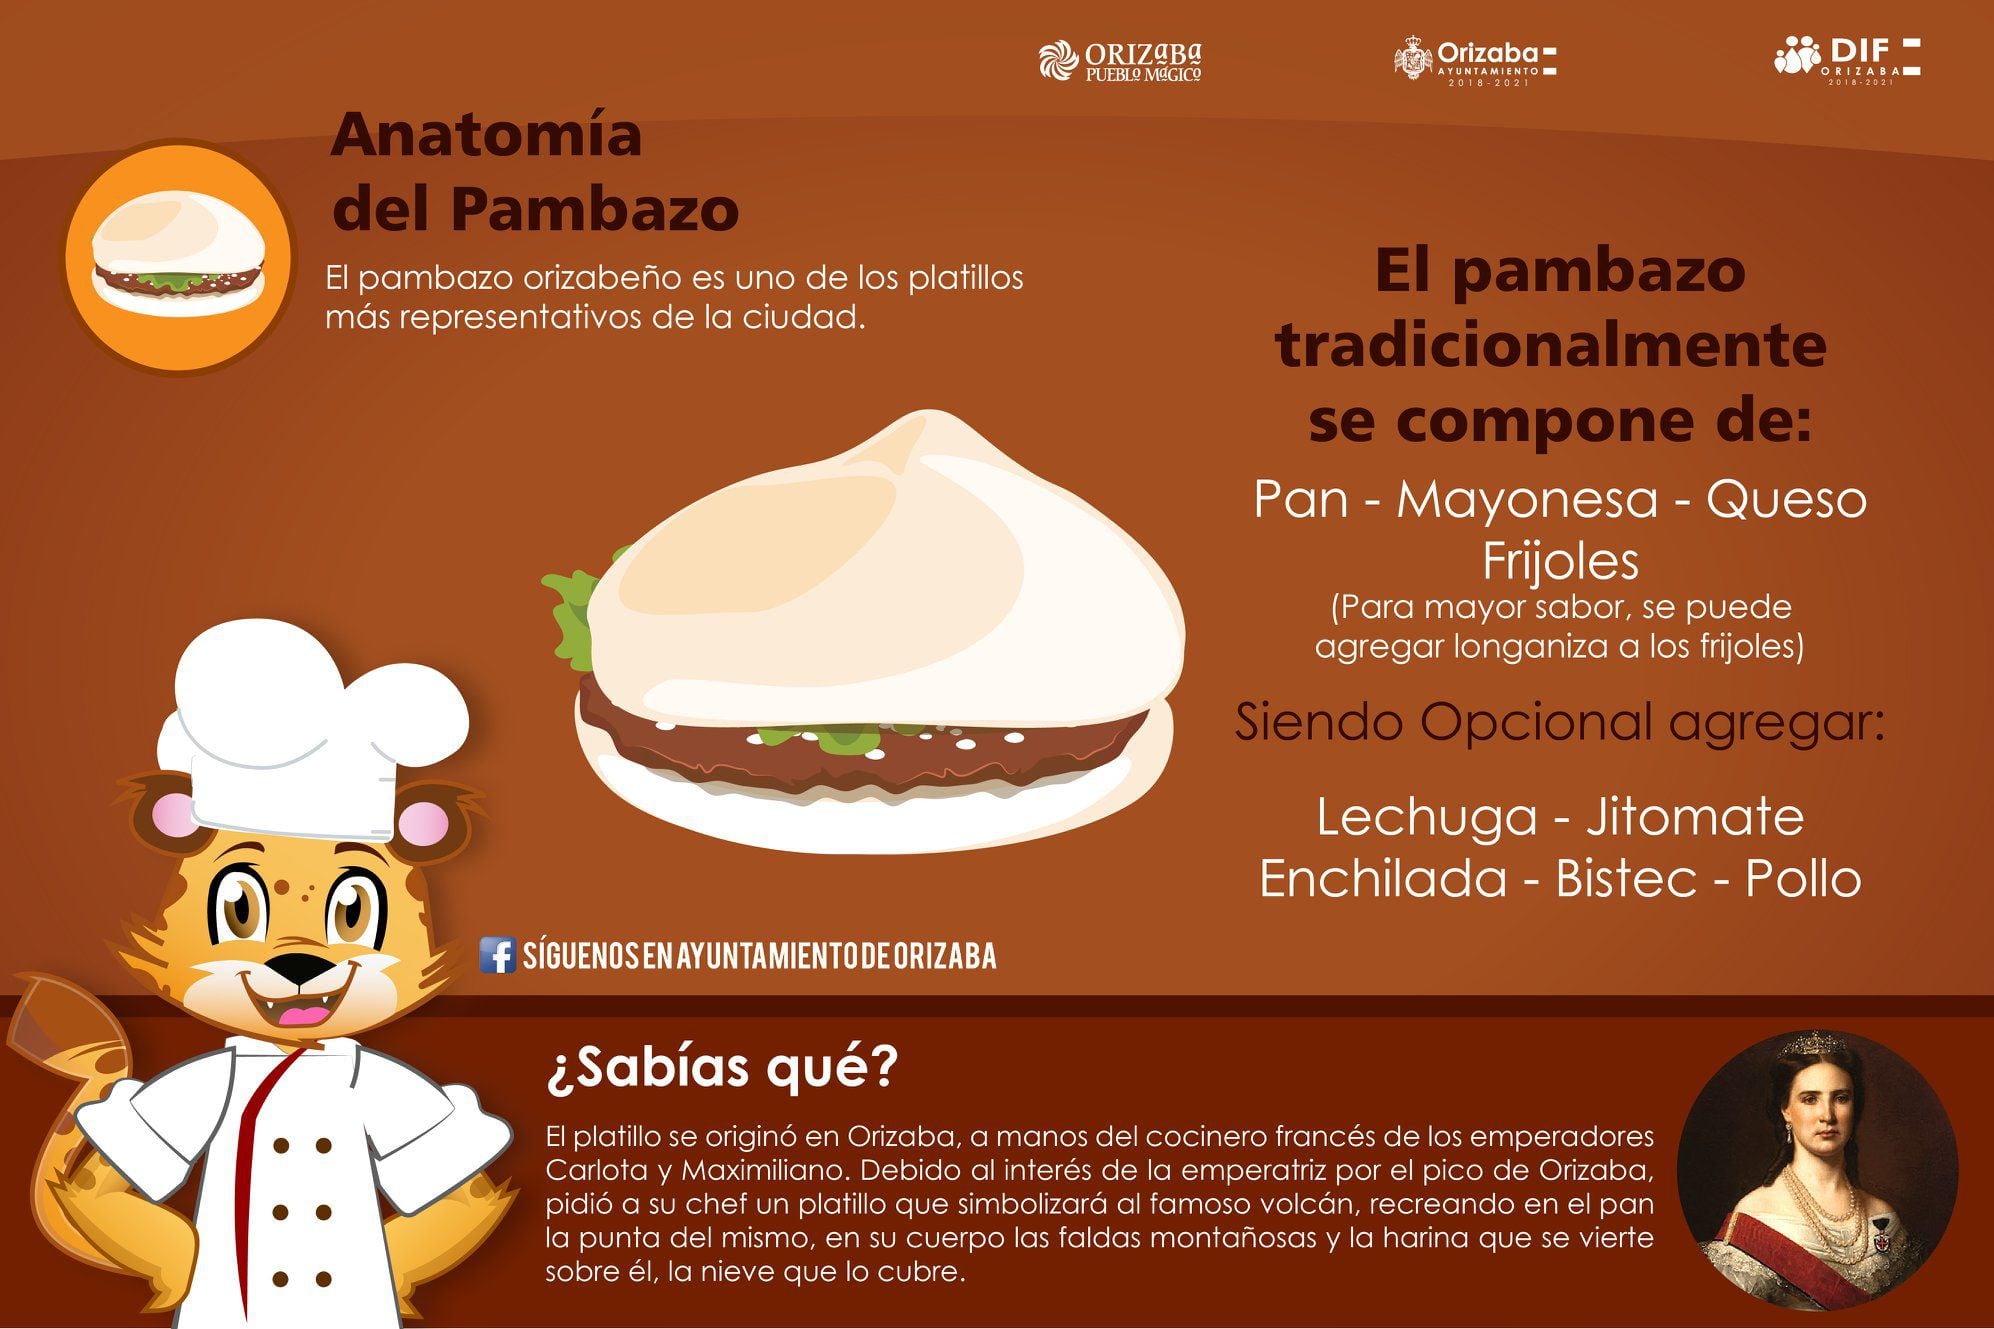 Anatomía del pambazo veracruzano, según el Ayuntamiento de Orizaba.